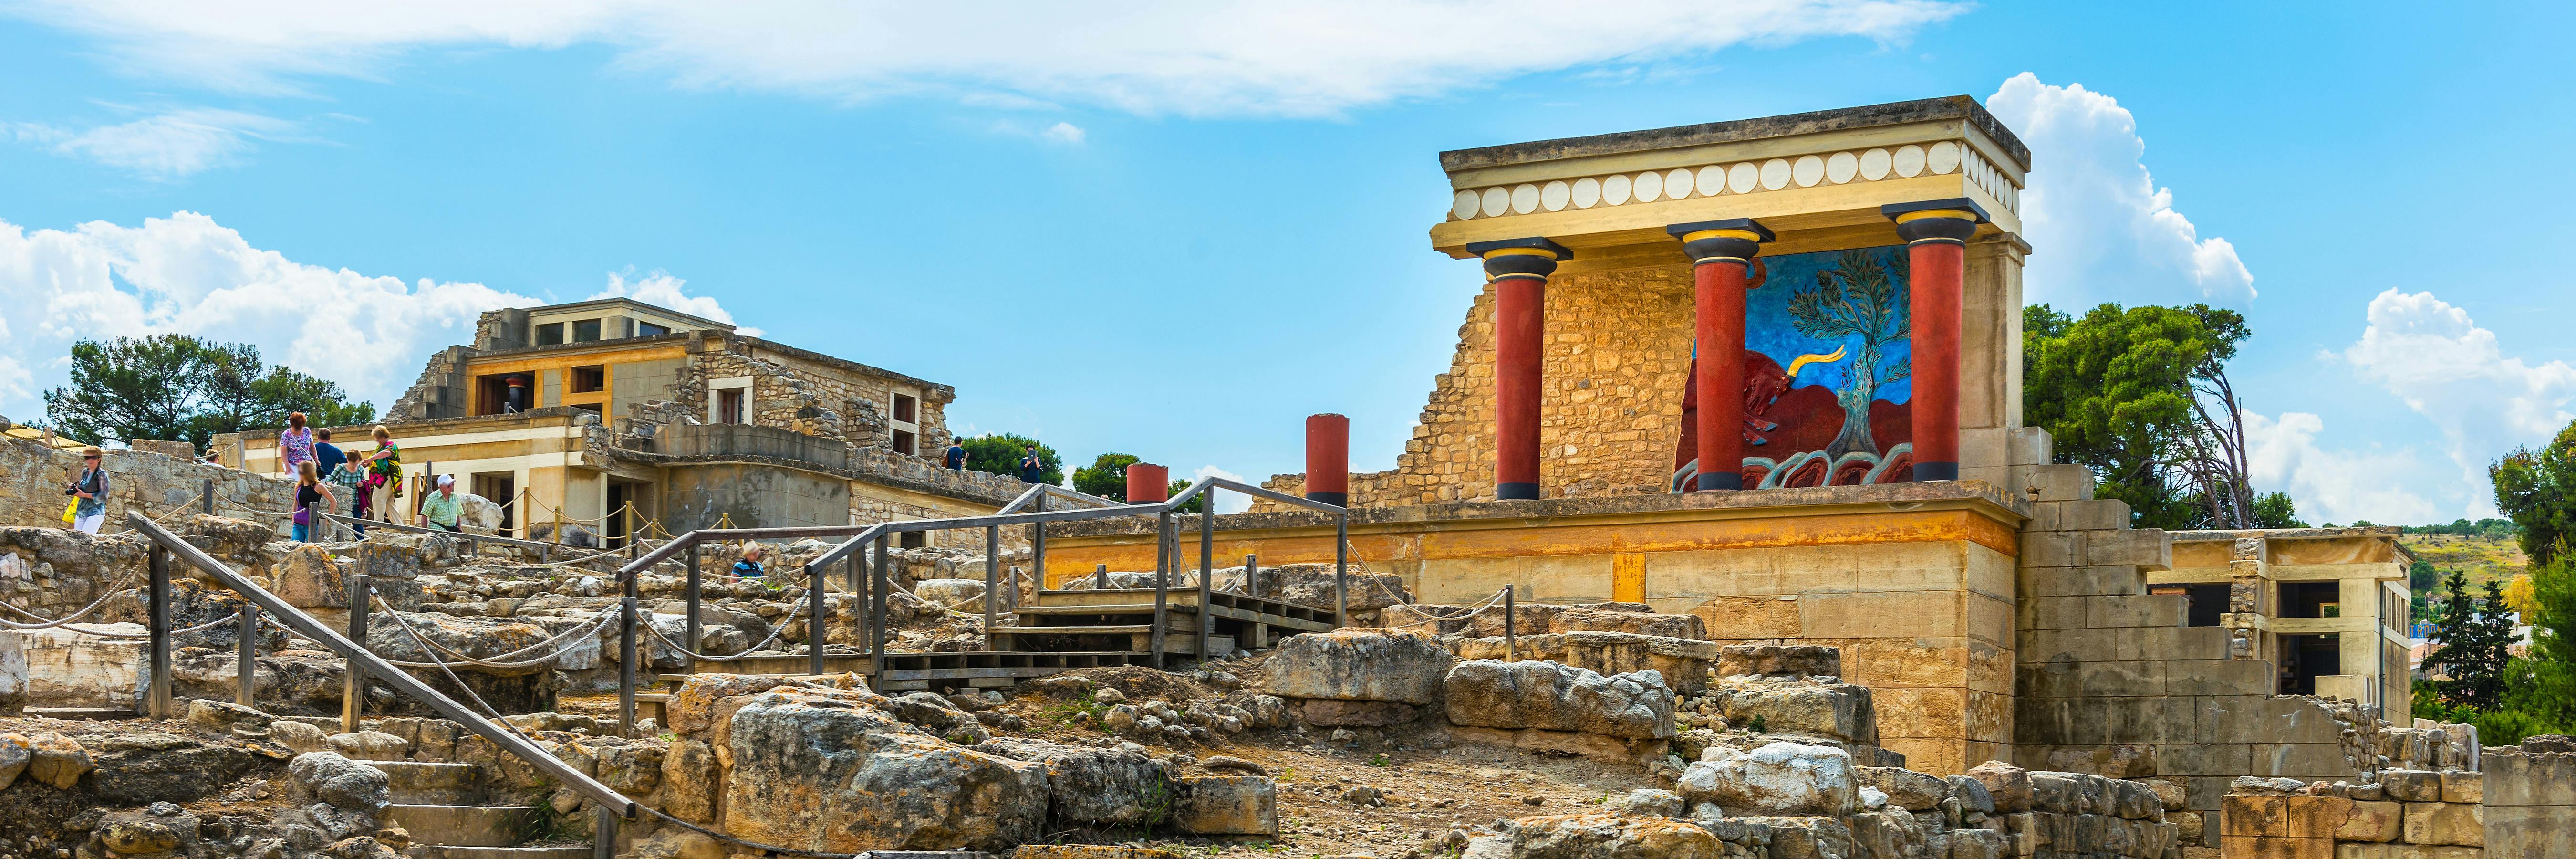 Visite du palais de Knossos et du musée archéologique avec transport depuis Héraklion